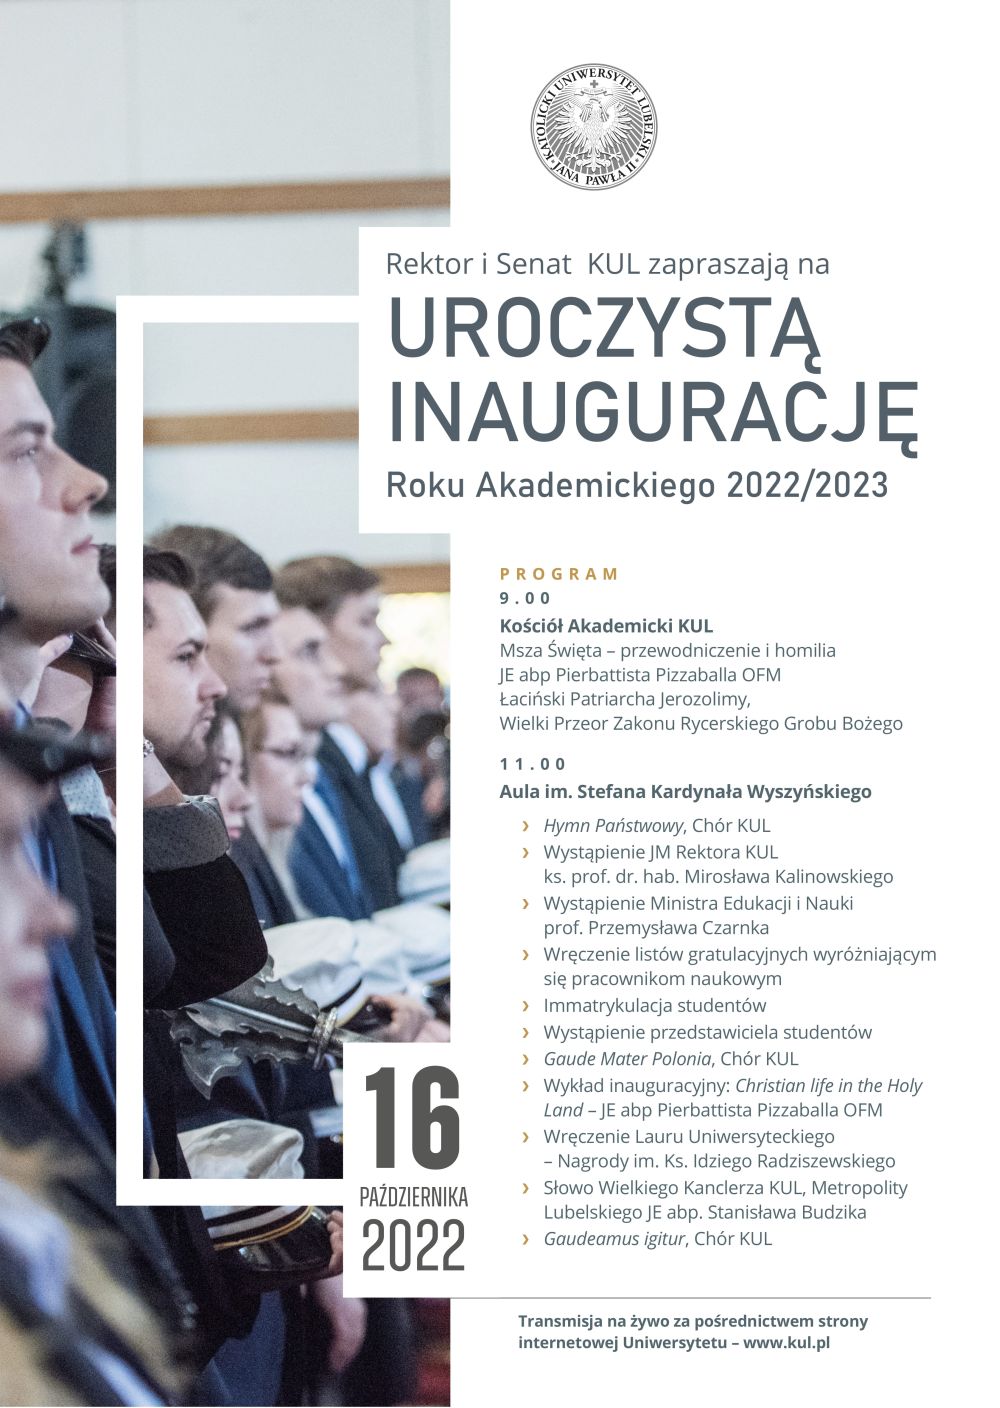 Program uroczystej inauguracji roku akademickiego 2022/23